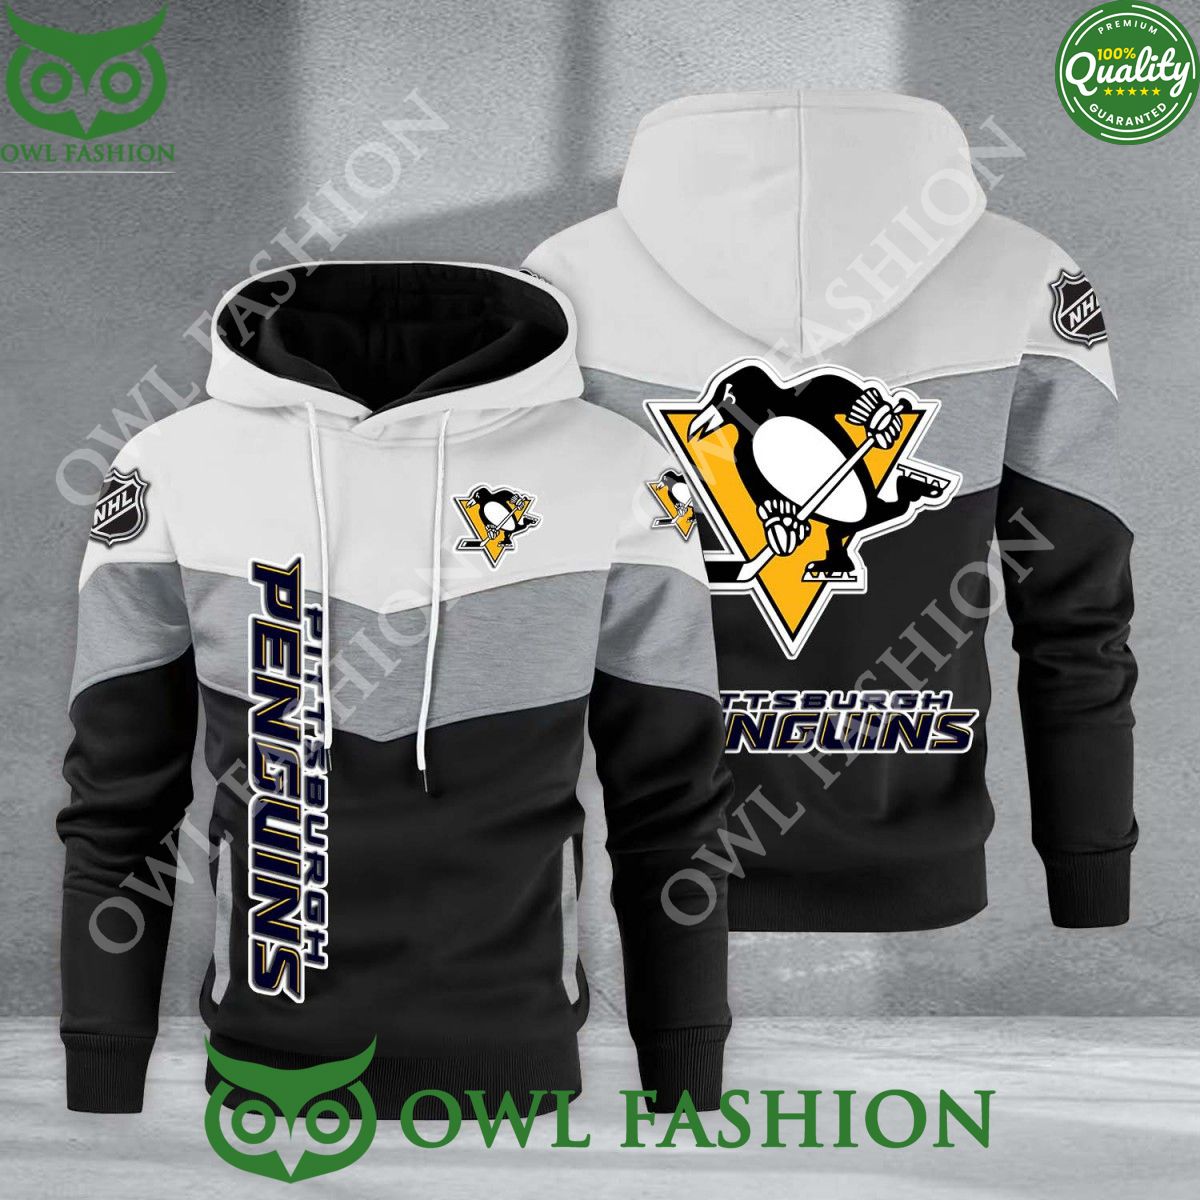 pittsburgh penguins nhl hockey black white printed hoodie 1 oOvc8.jpg